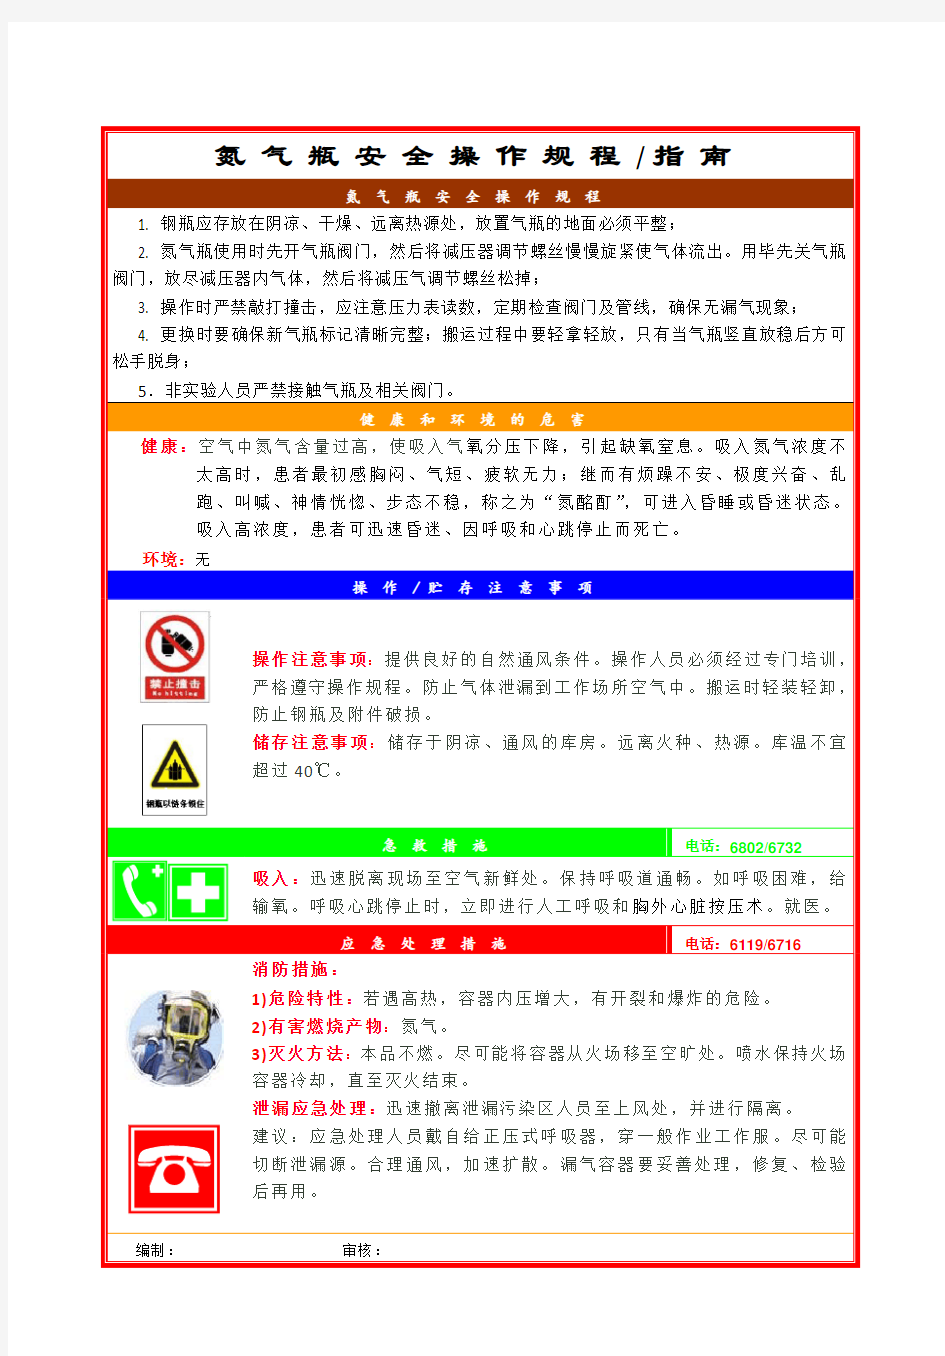 氮气瓶安全操作规程-指南